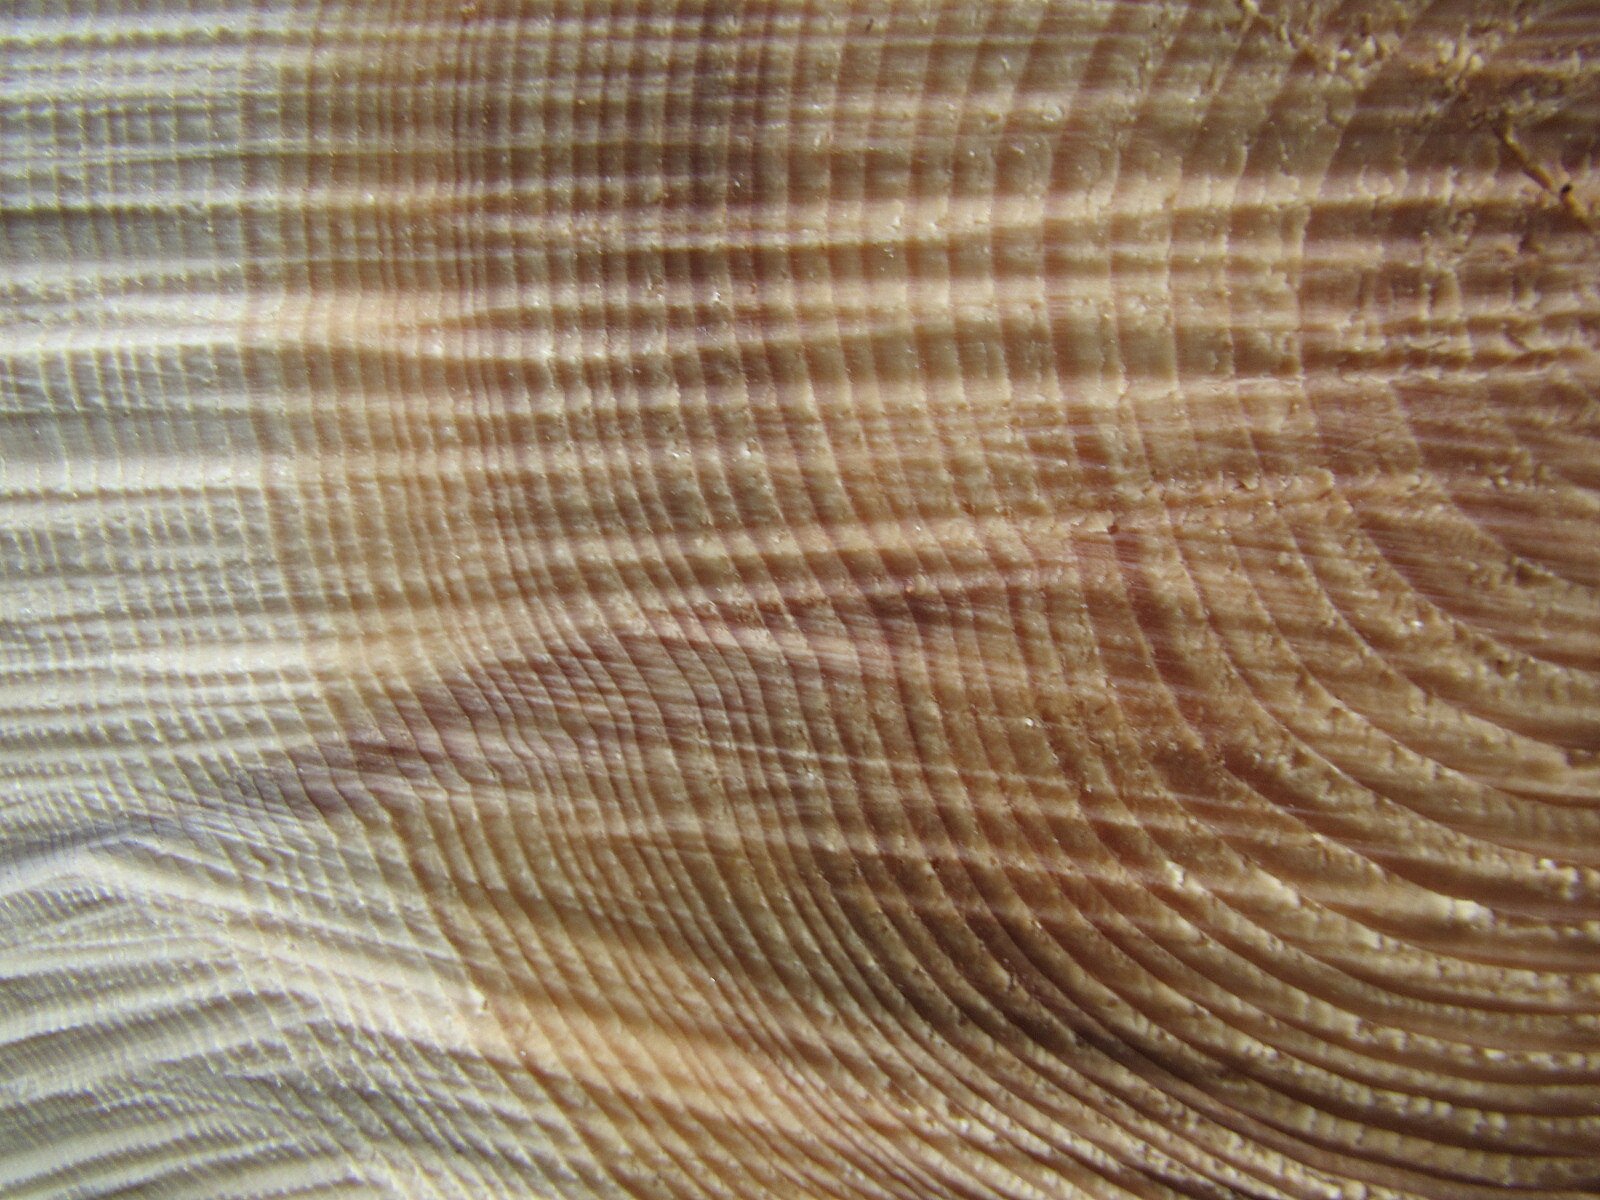 Grafika przedstawia zbliżenie na słoje drewna. Są to warstwy drewna, różniące się między sobą odcieniem oraz grubością. Słoje są widoczne na poprzecznym przekroju pnia drzewa jako wyraźne pierścienie.